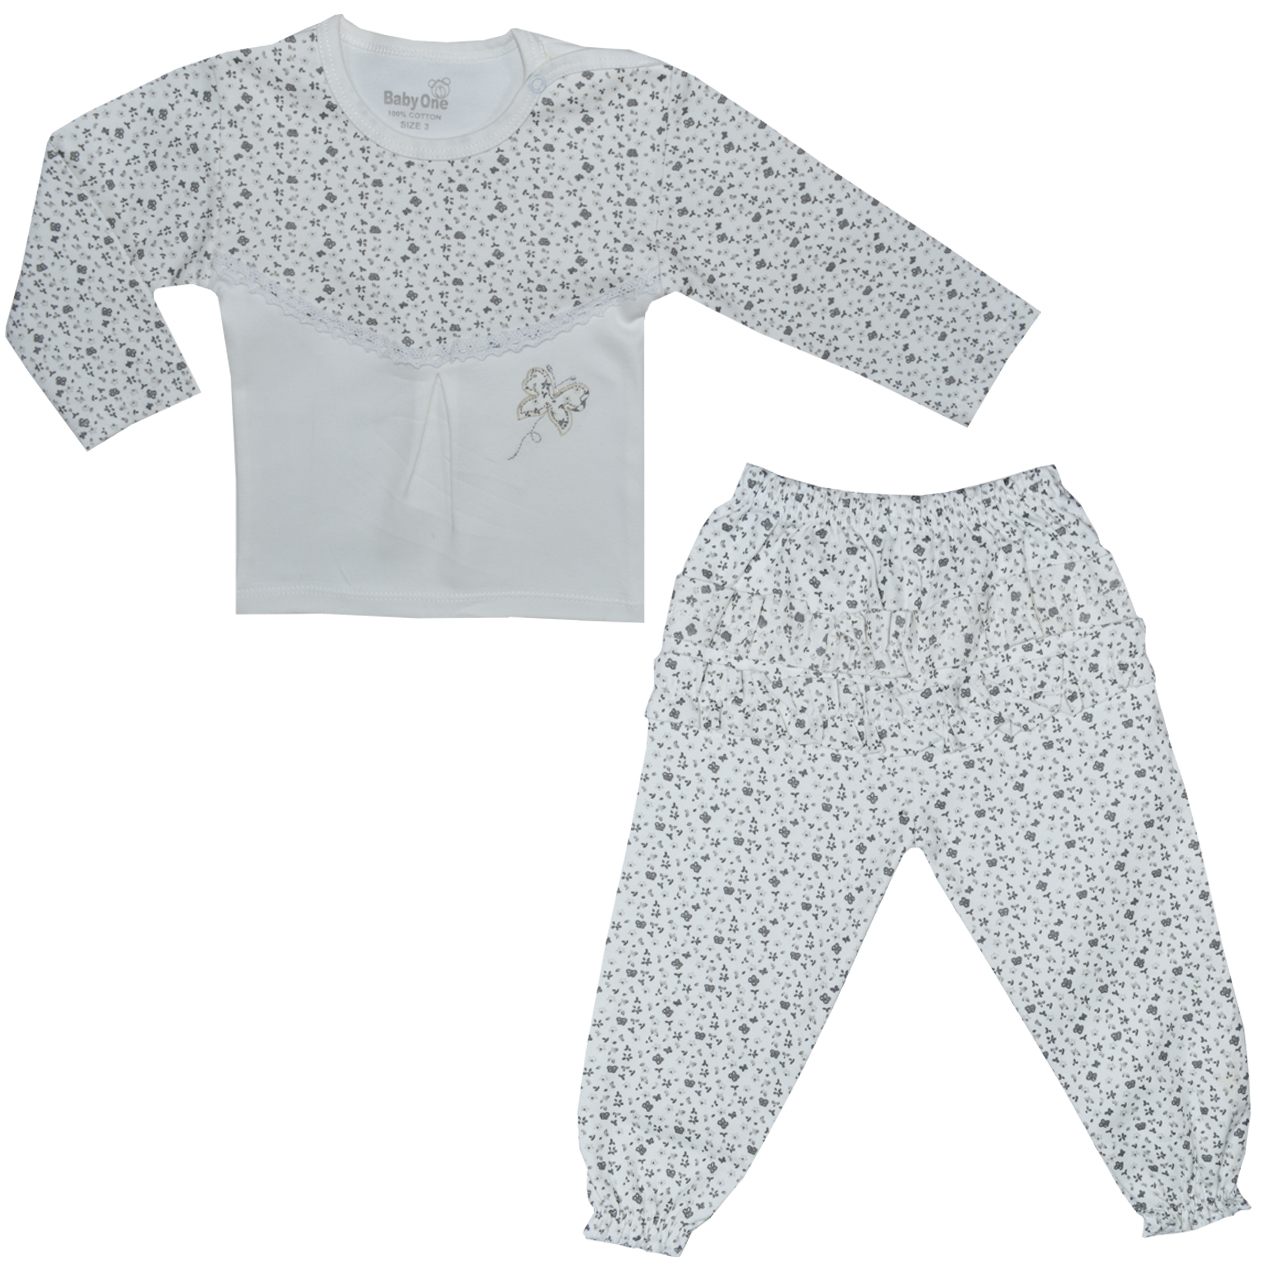 ست تی شرت و شلوار نوزادی بی بی وان مدل پروانه کد 1